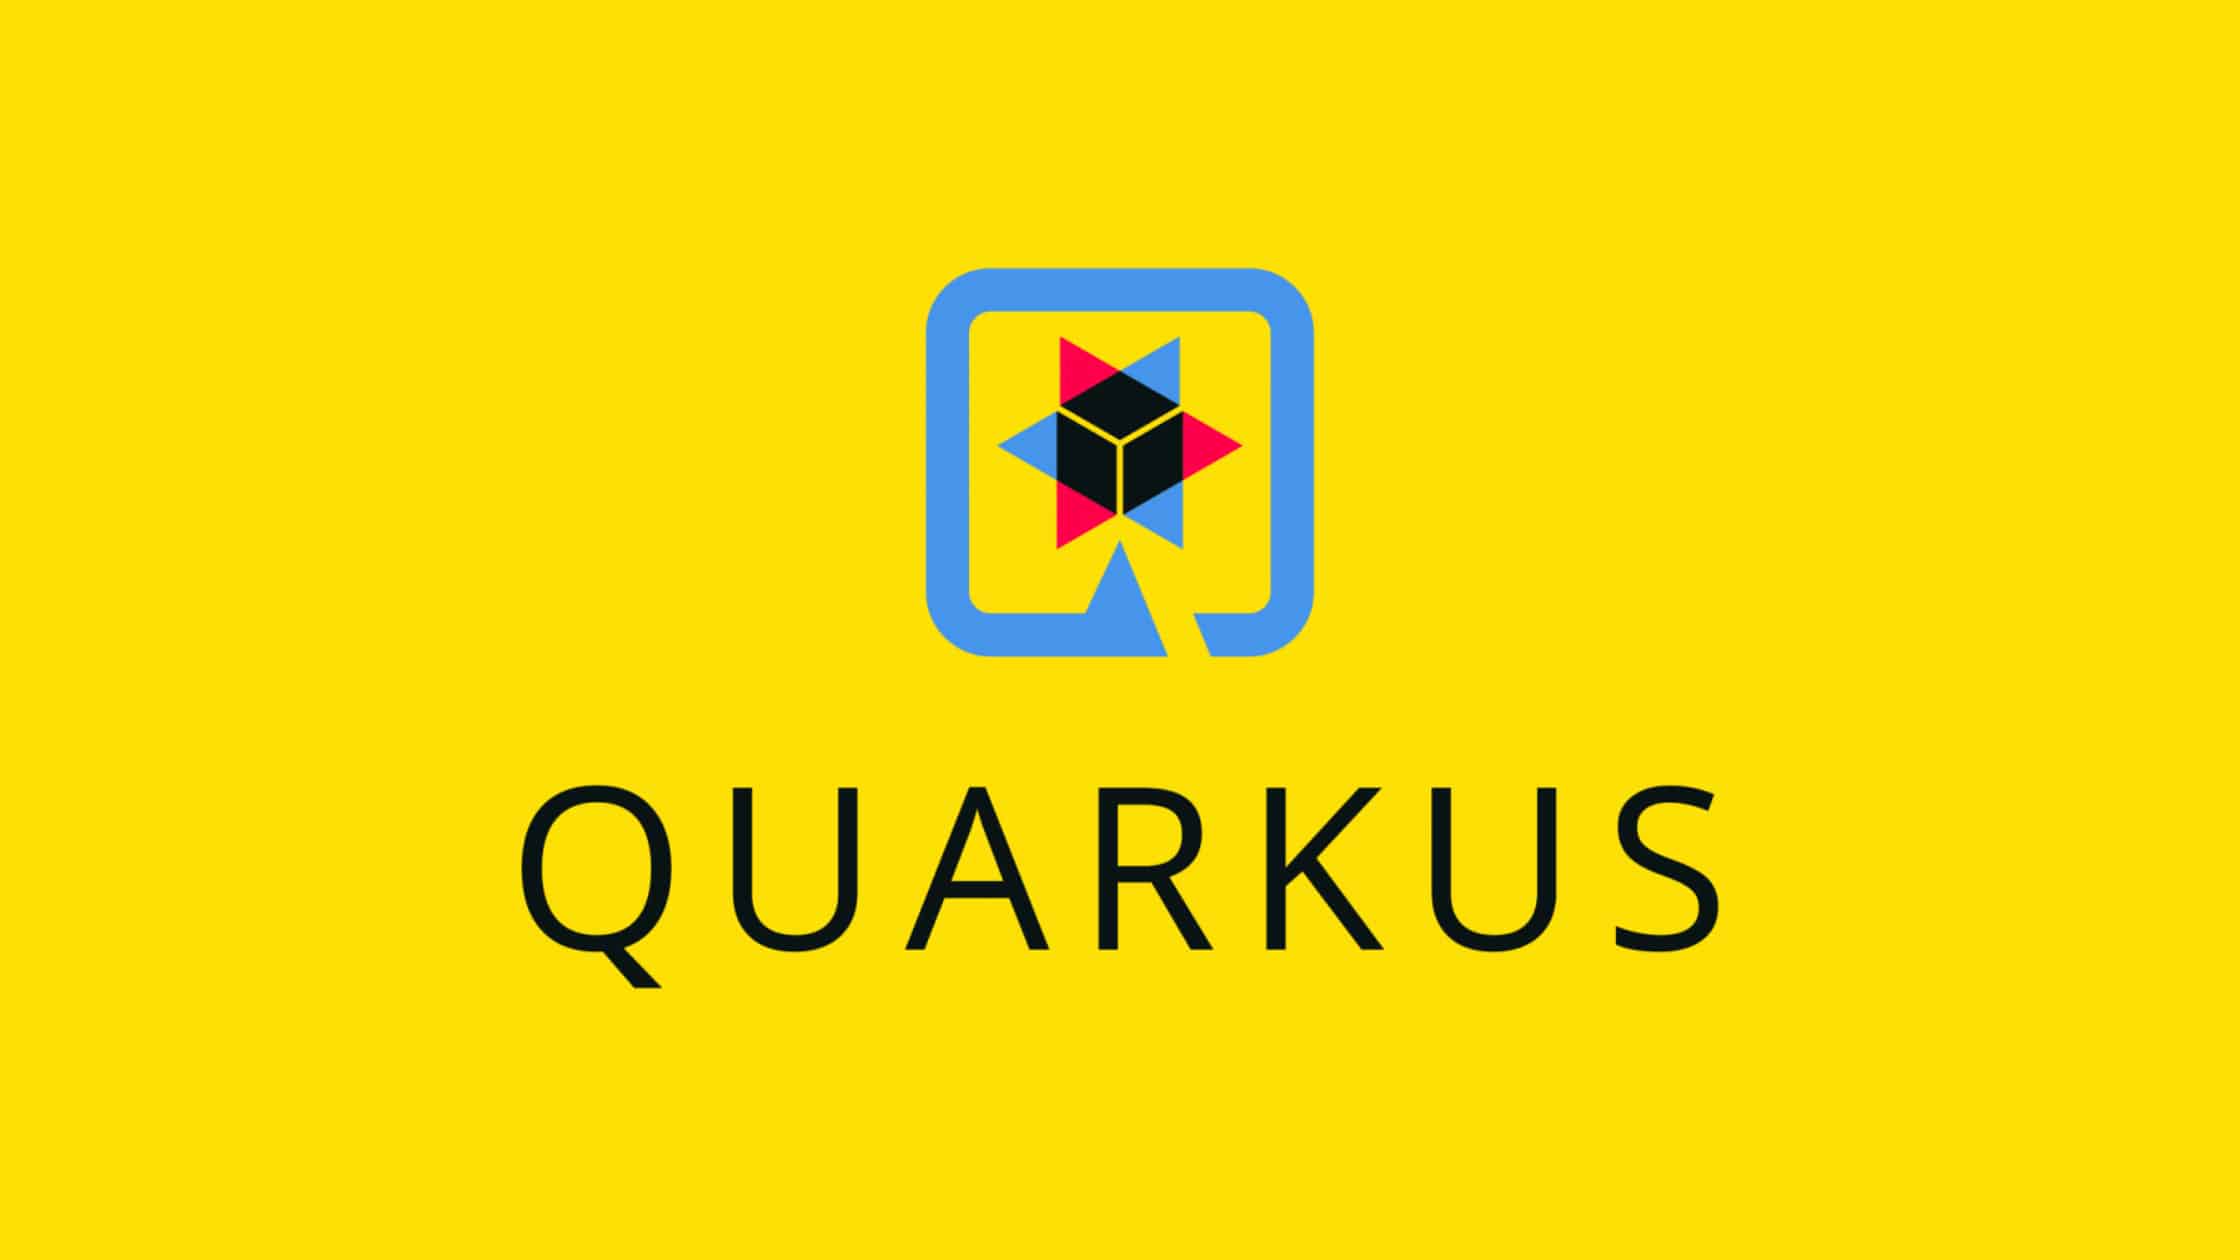 How To Fix Cve 2022 4116 A 0 Day Vulnerability In Quarkus Java Framework